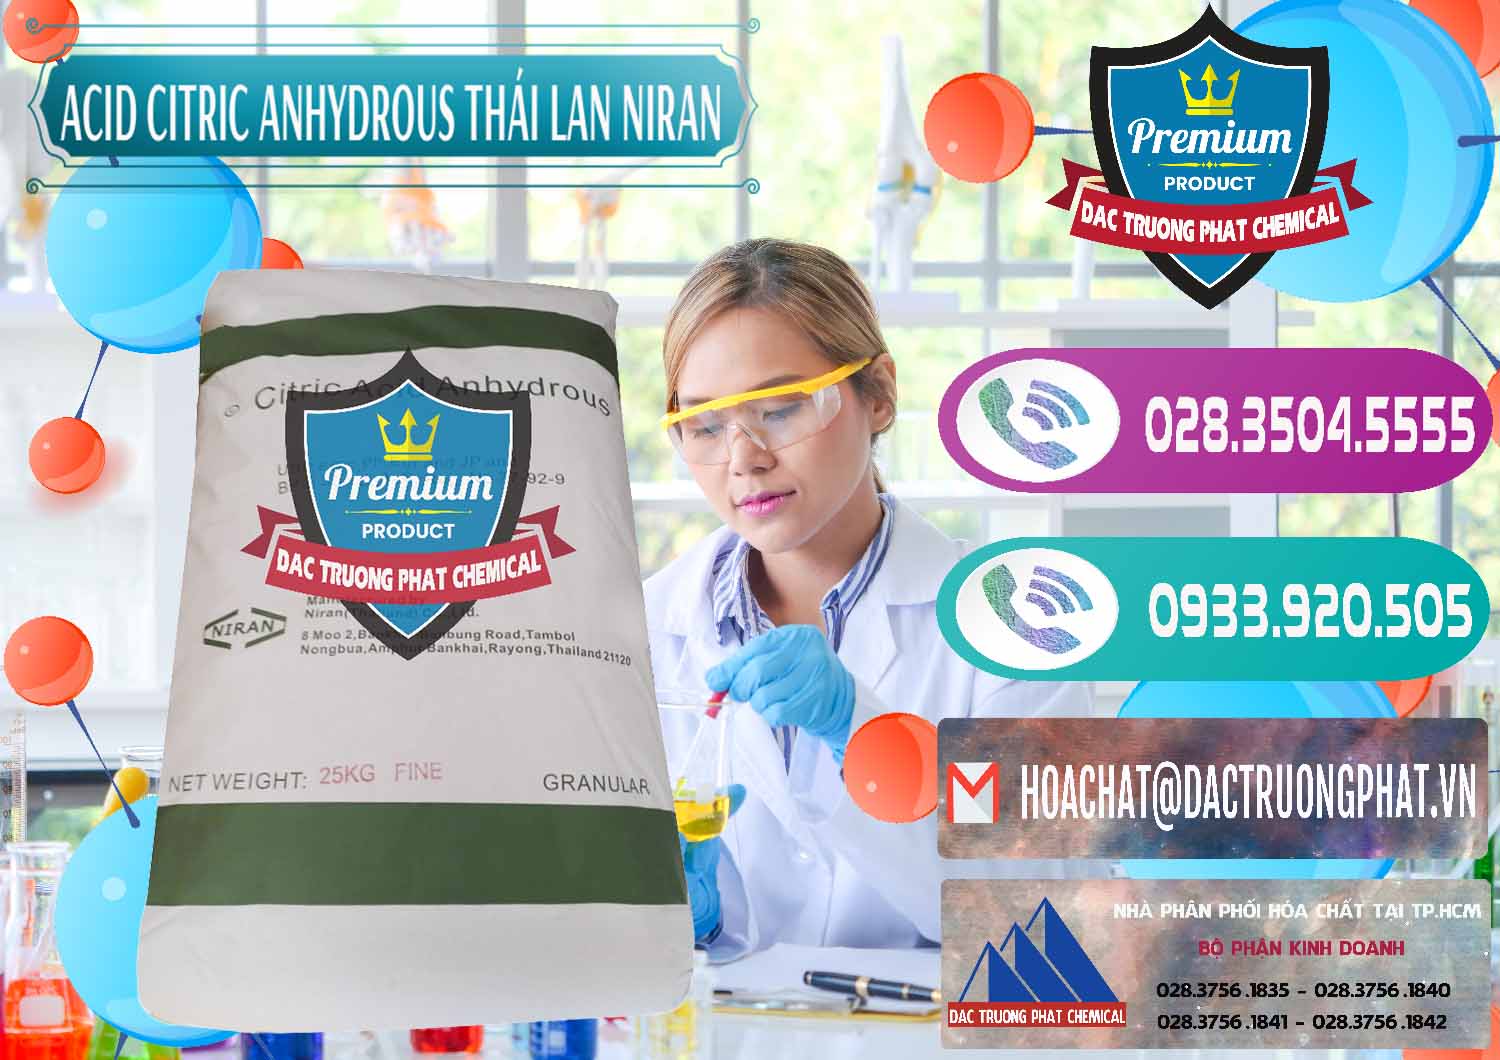 Cty chuyên bán và cung cấp Acid Citric - Axit Citric Anhydrous - Thái Lan Niran - 0231 - Chuyên phân phối - cung cấp hóa chất tại TP.HCM - hoachatxulynuoc.com